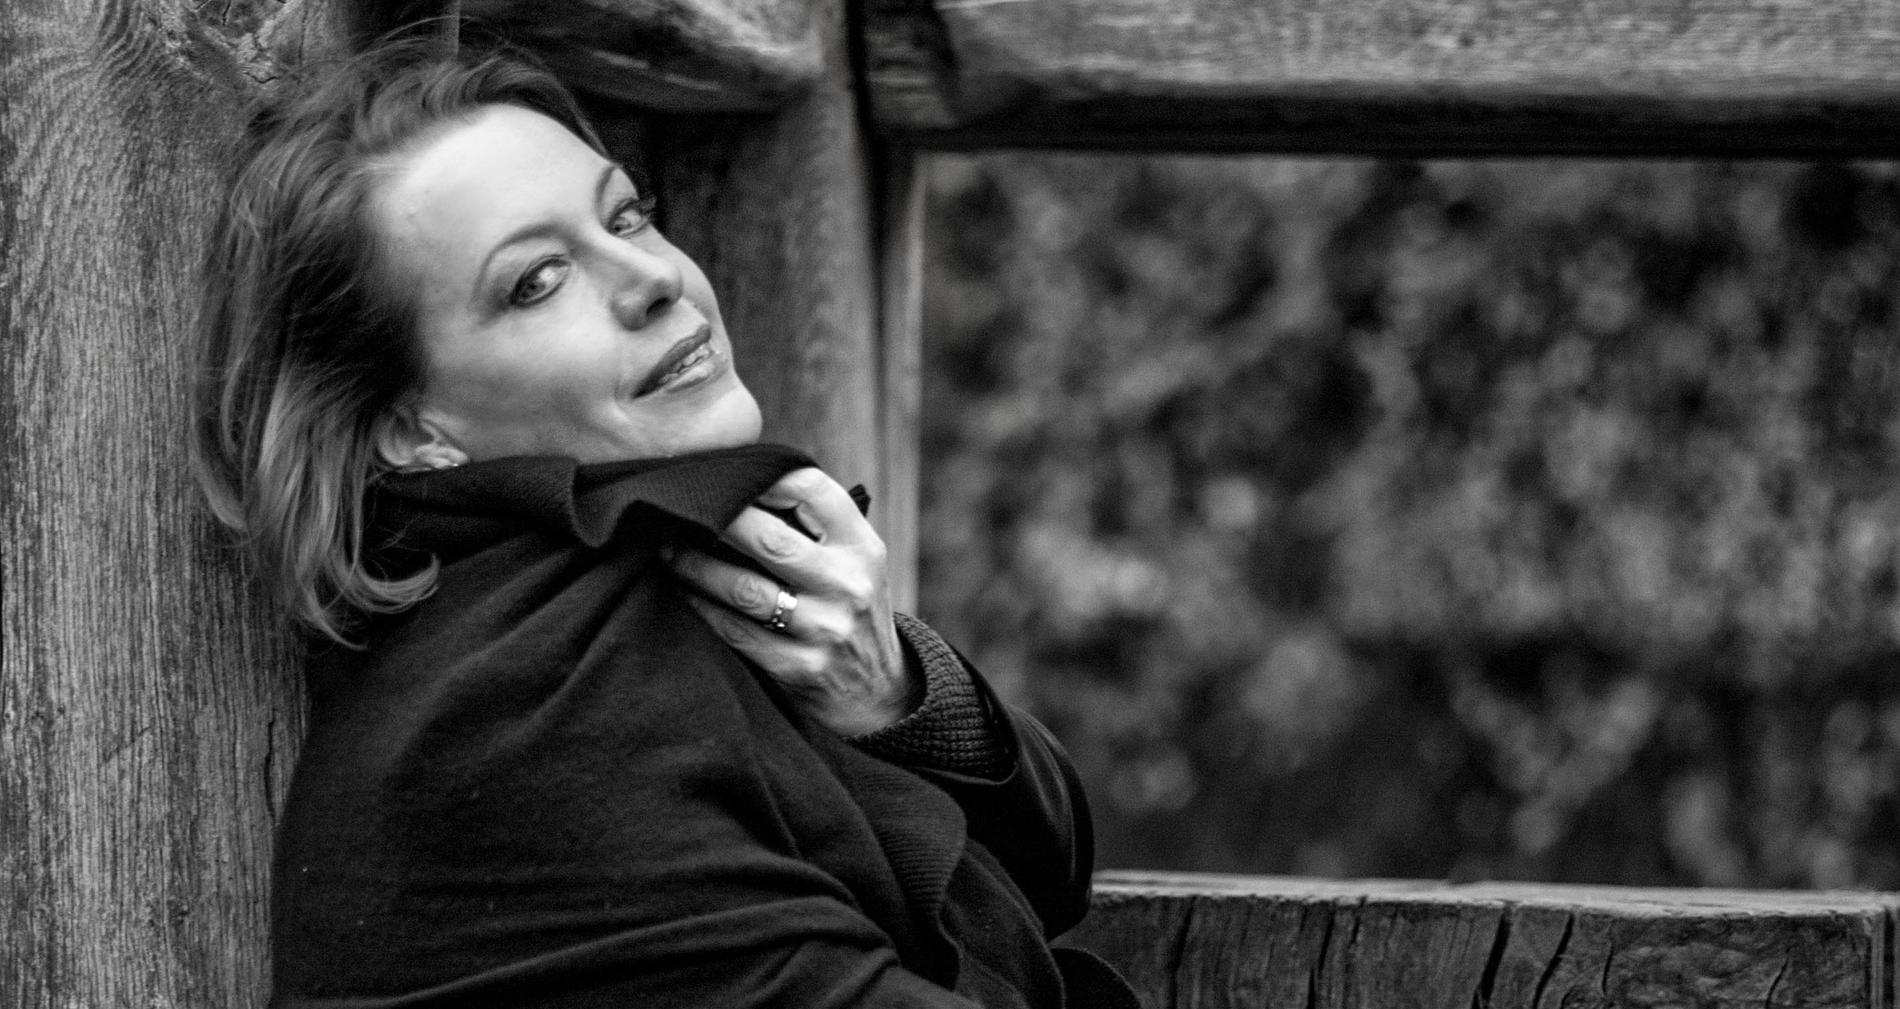 Sopranen Nina Stemme är 2018 års mottagare av The Birgit Nilsson Prize